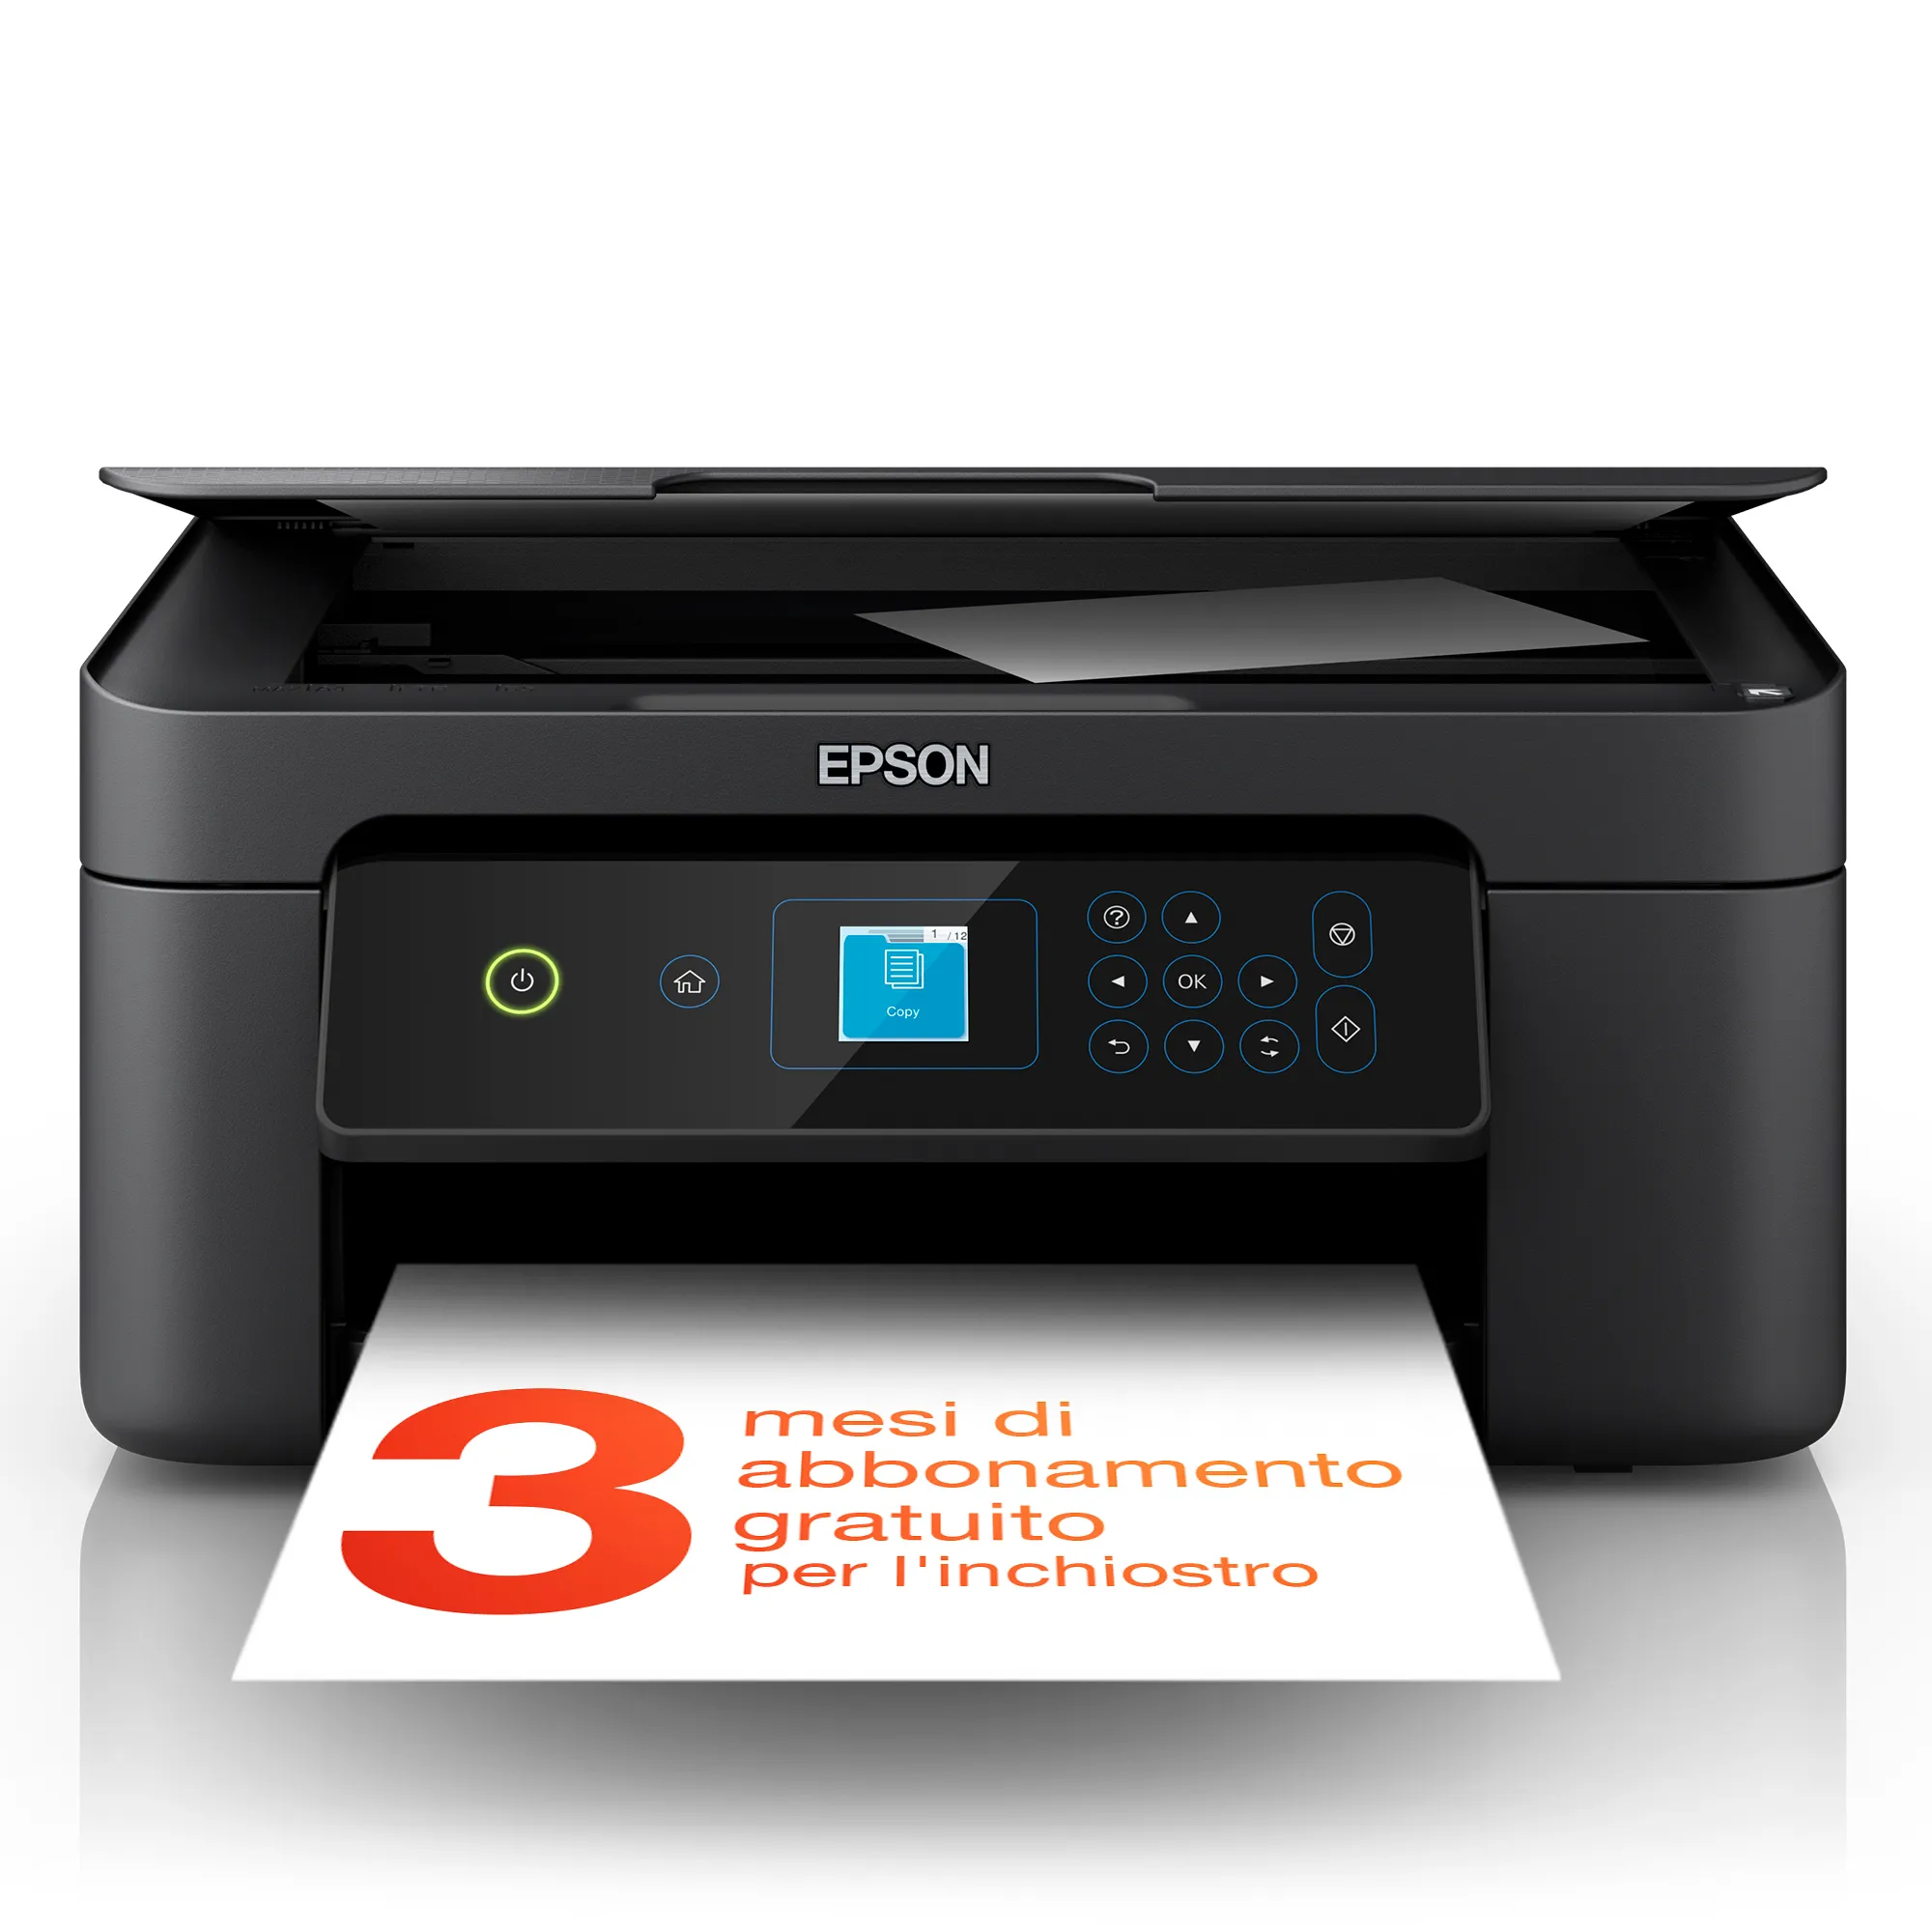 Vente EPSON Expression Home XP-3205 MFP inkjet 3in1 33ppm Epson au meilleur prix - visuel 2